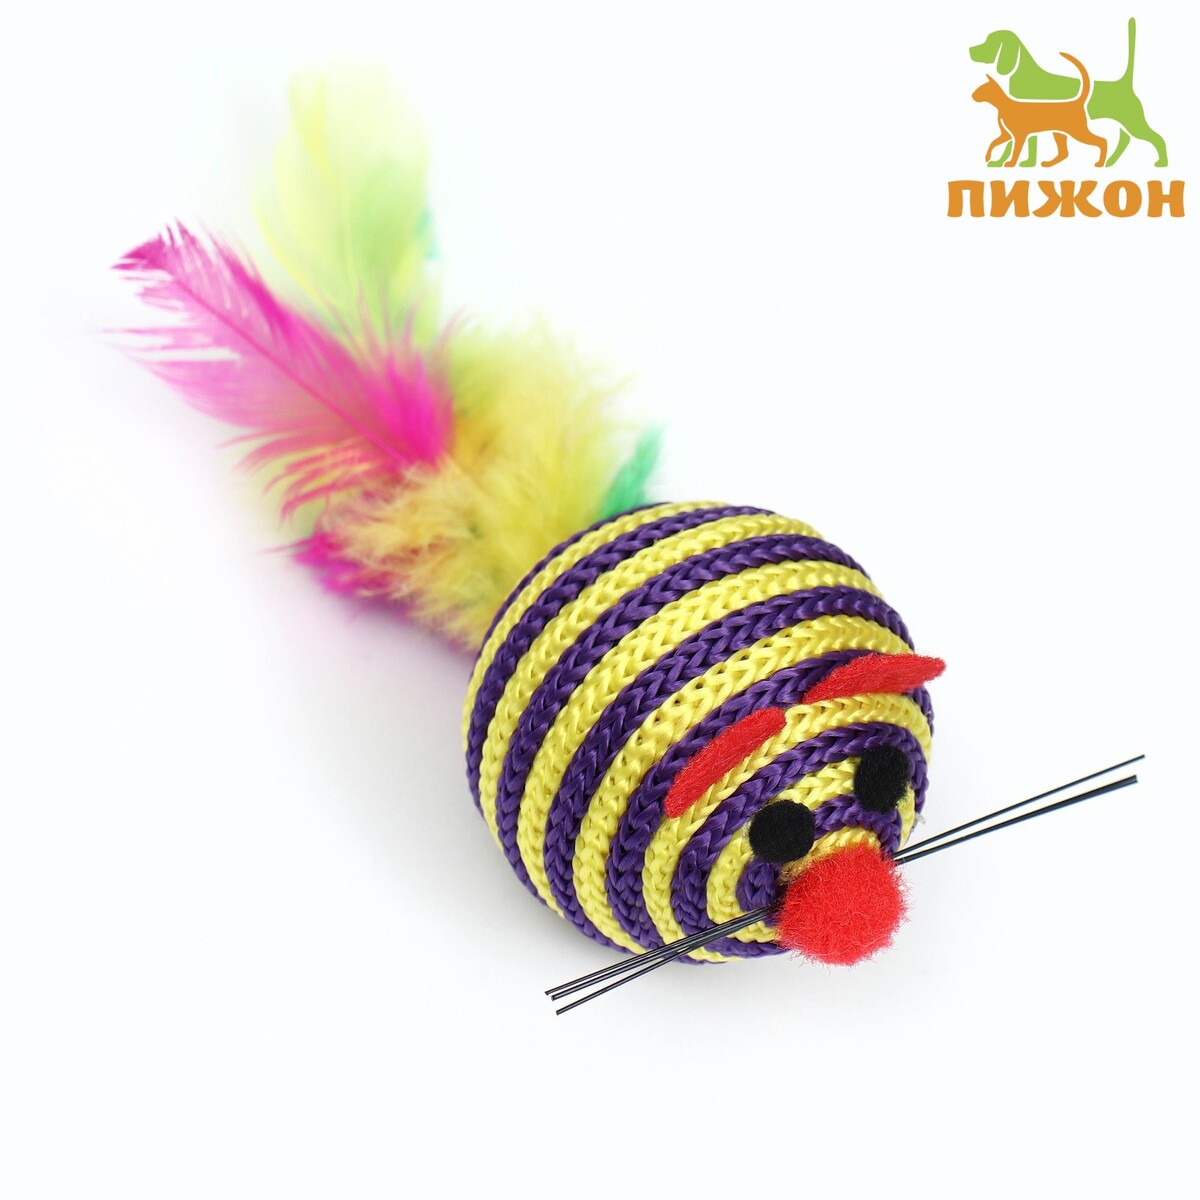 Шарик-мышь из текстиля с перьями, 4,2 см, фиолетовая мышь oklick gmng 705gm 1520848